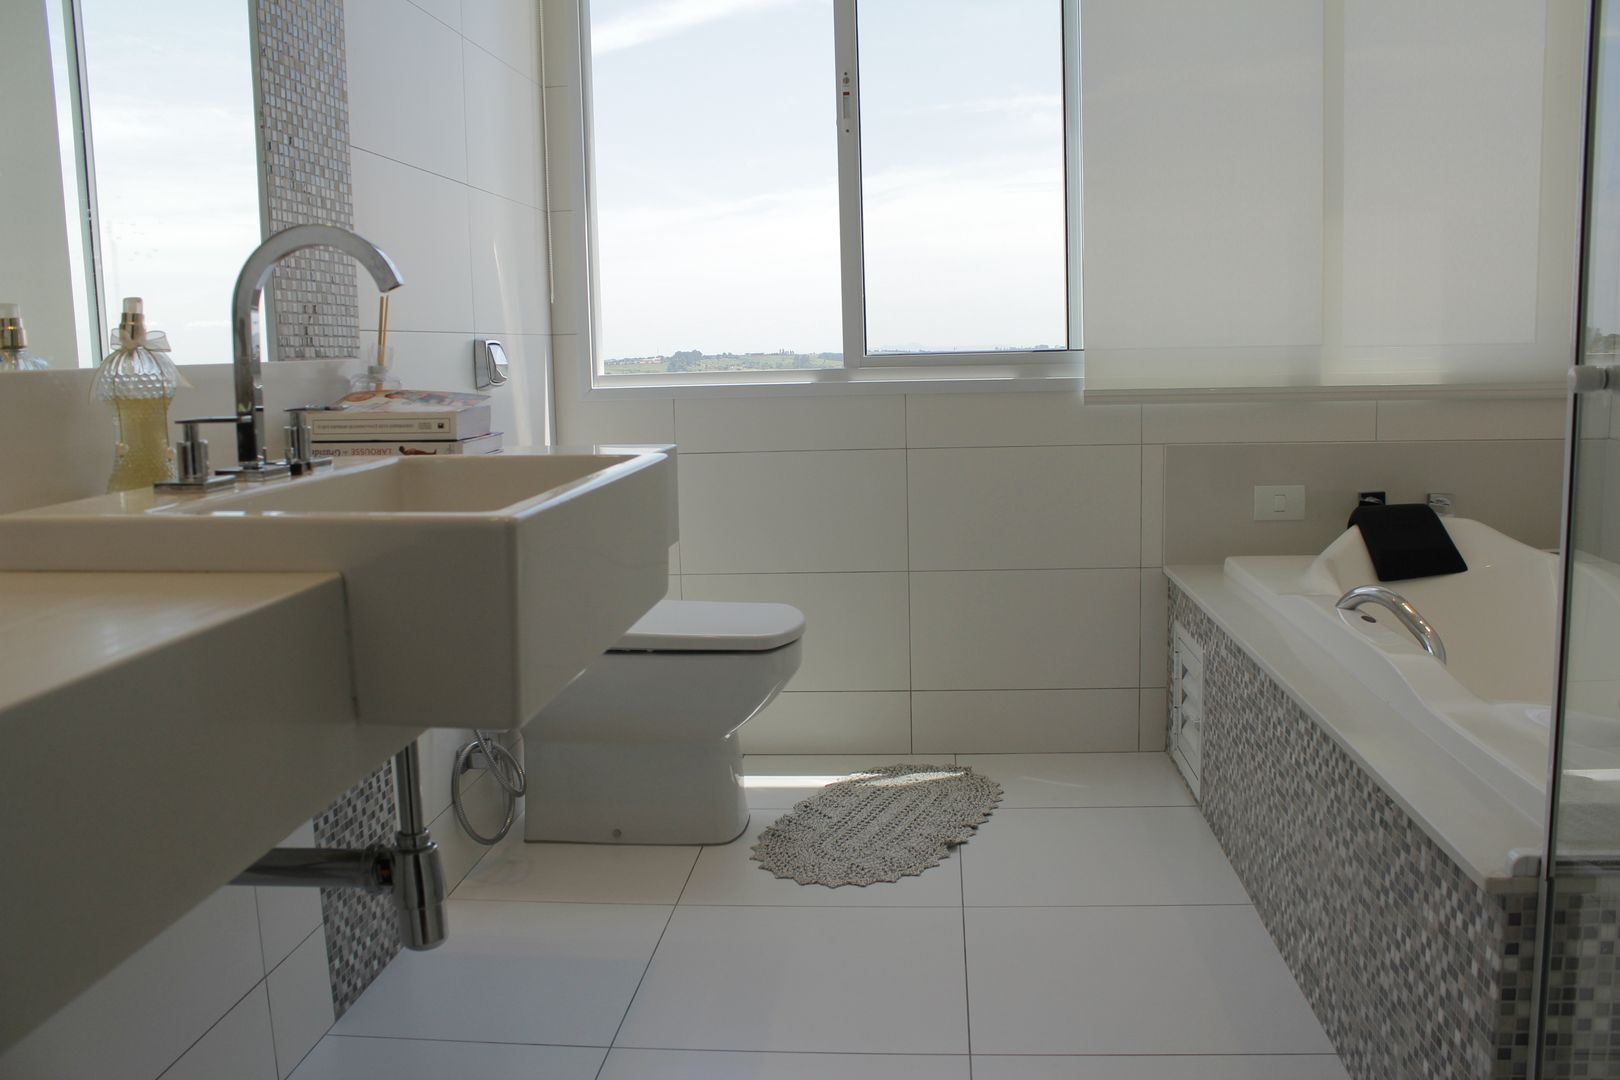 Casa LJ , Lozí - Projeto e Obra Lozí - Projeto e Obra Minimal style Bathroom